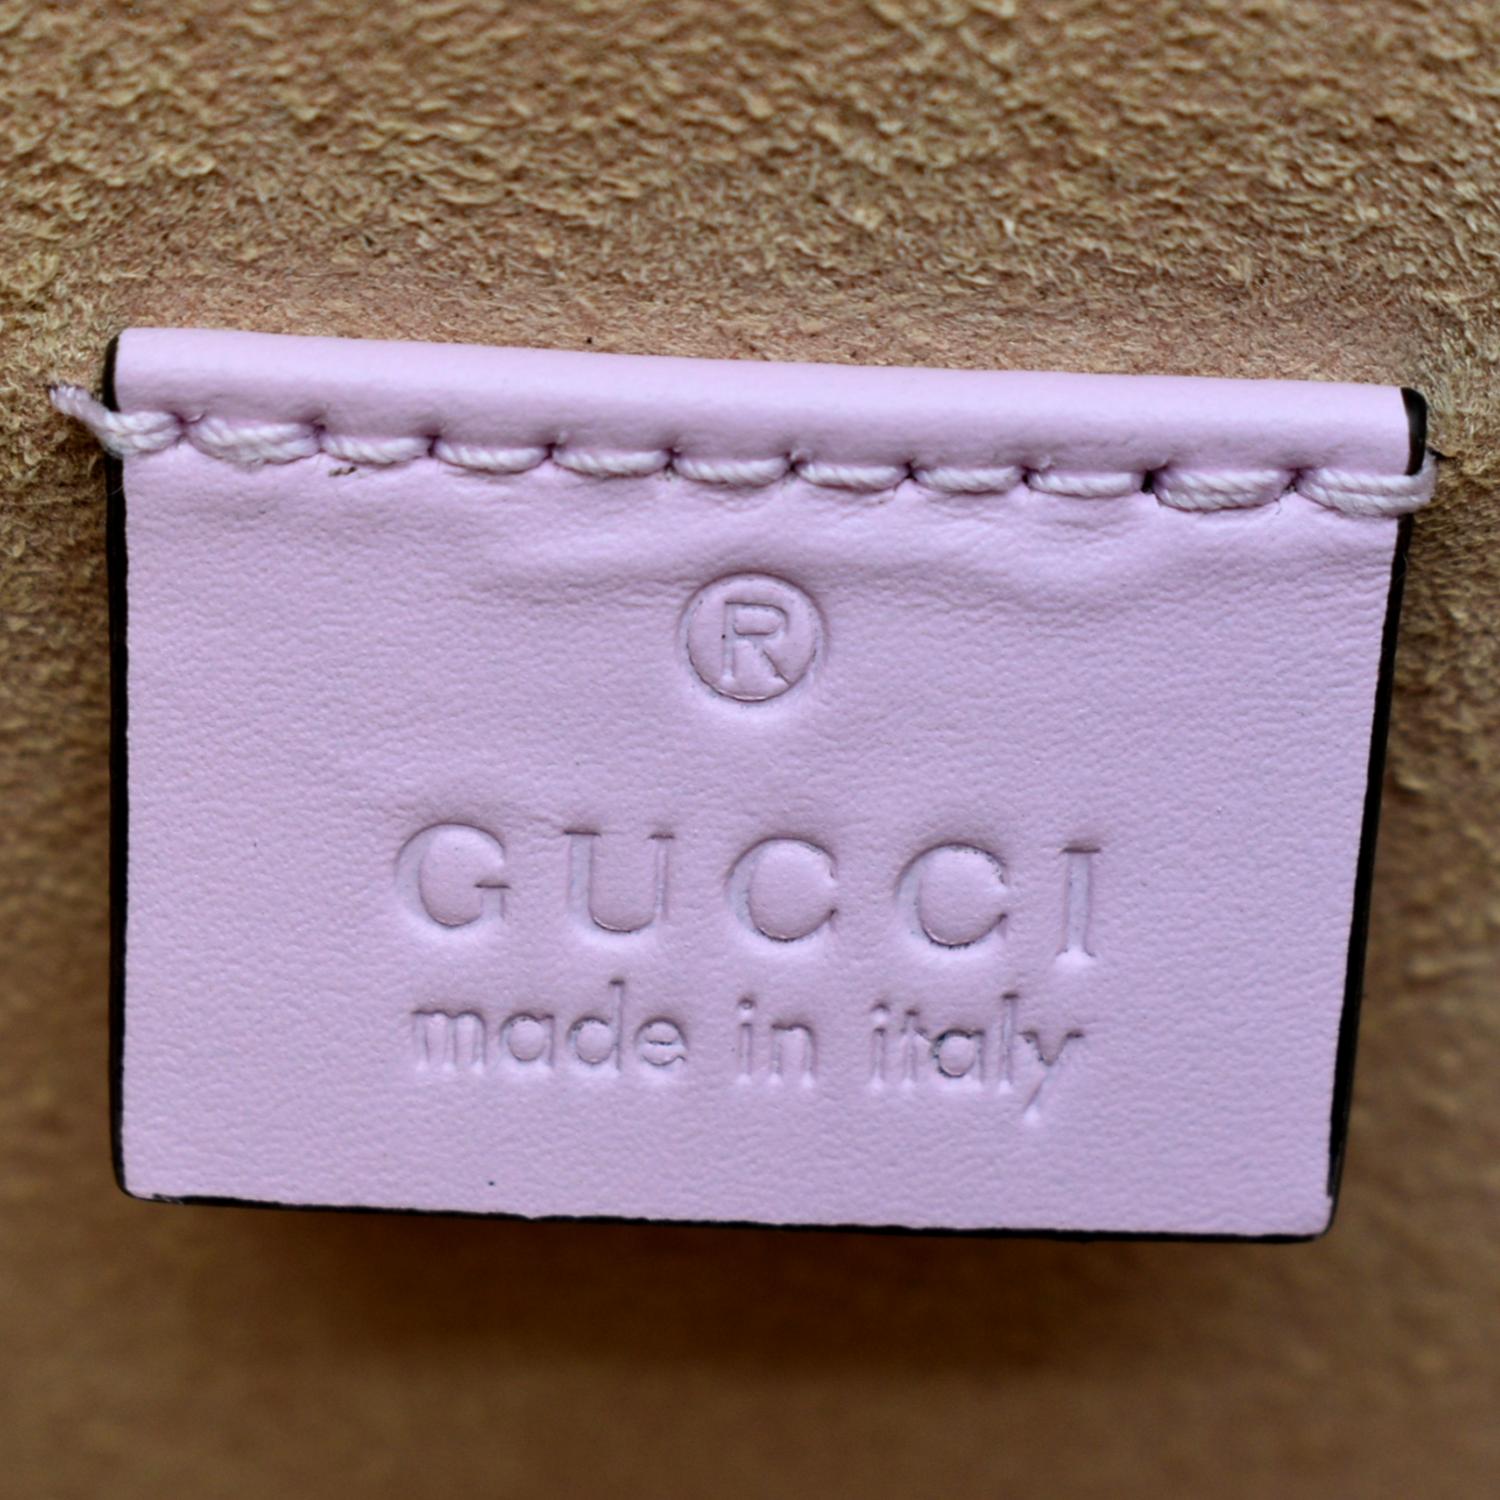 Gucci Les Pommes GG Supreme Bamboo Shoulder Bag